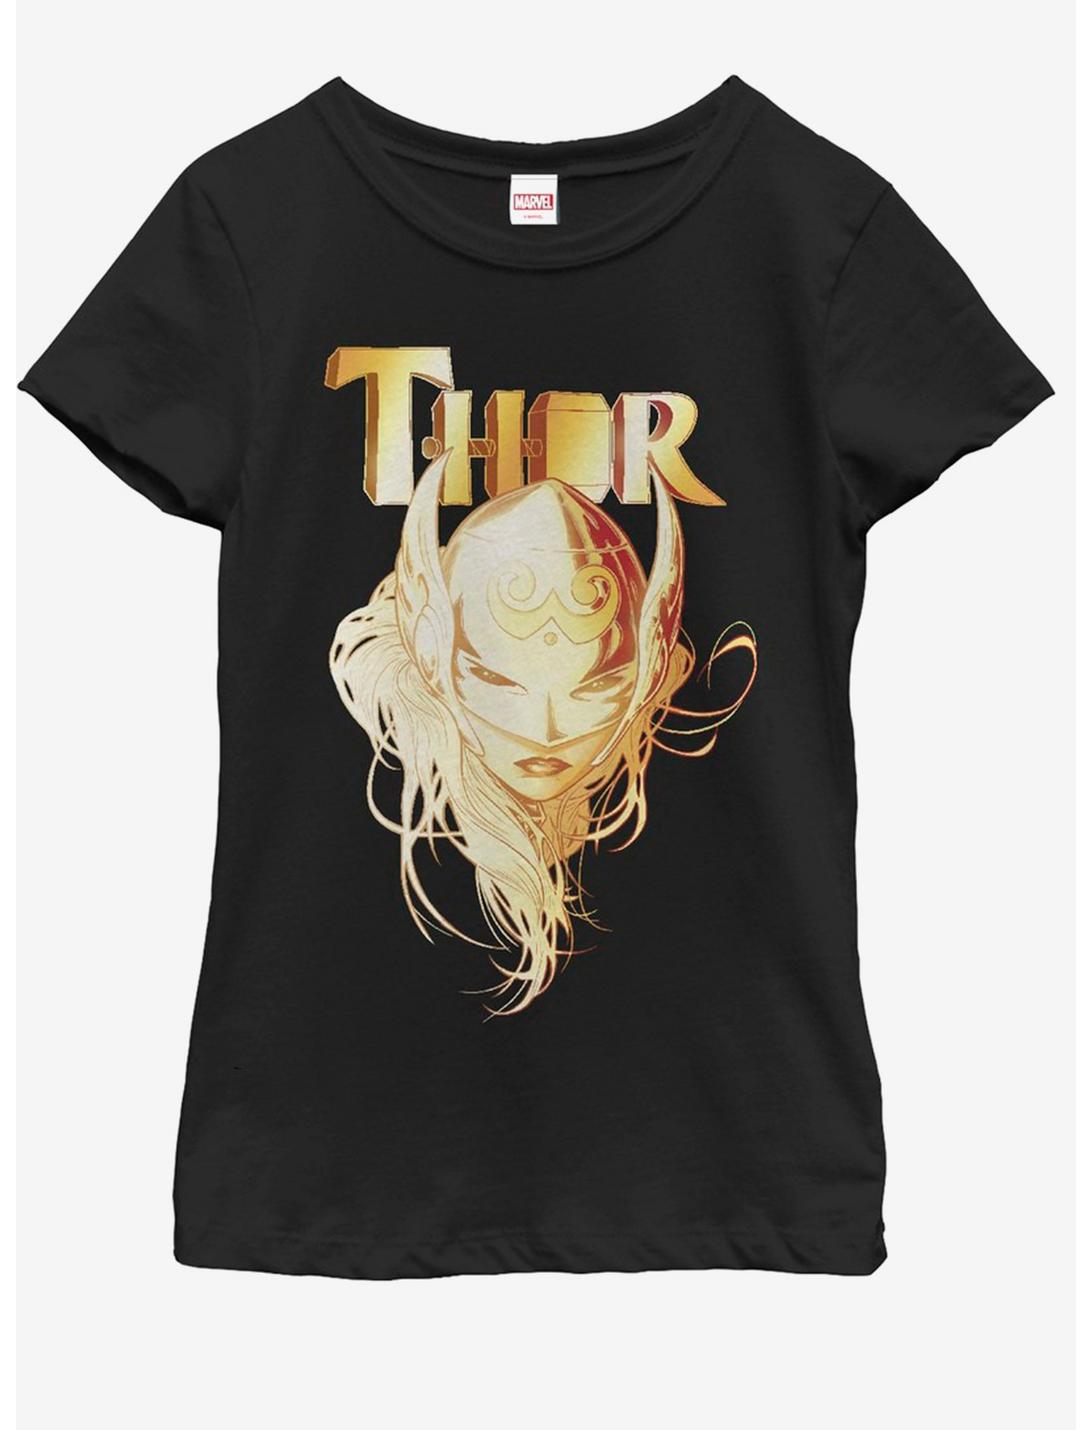 Marvel Thor Lady Thor Youth Girls T-Shirt, BLACK, hi-res